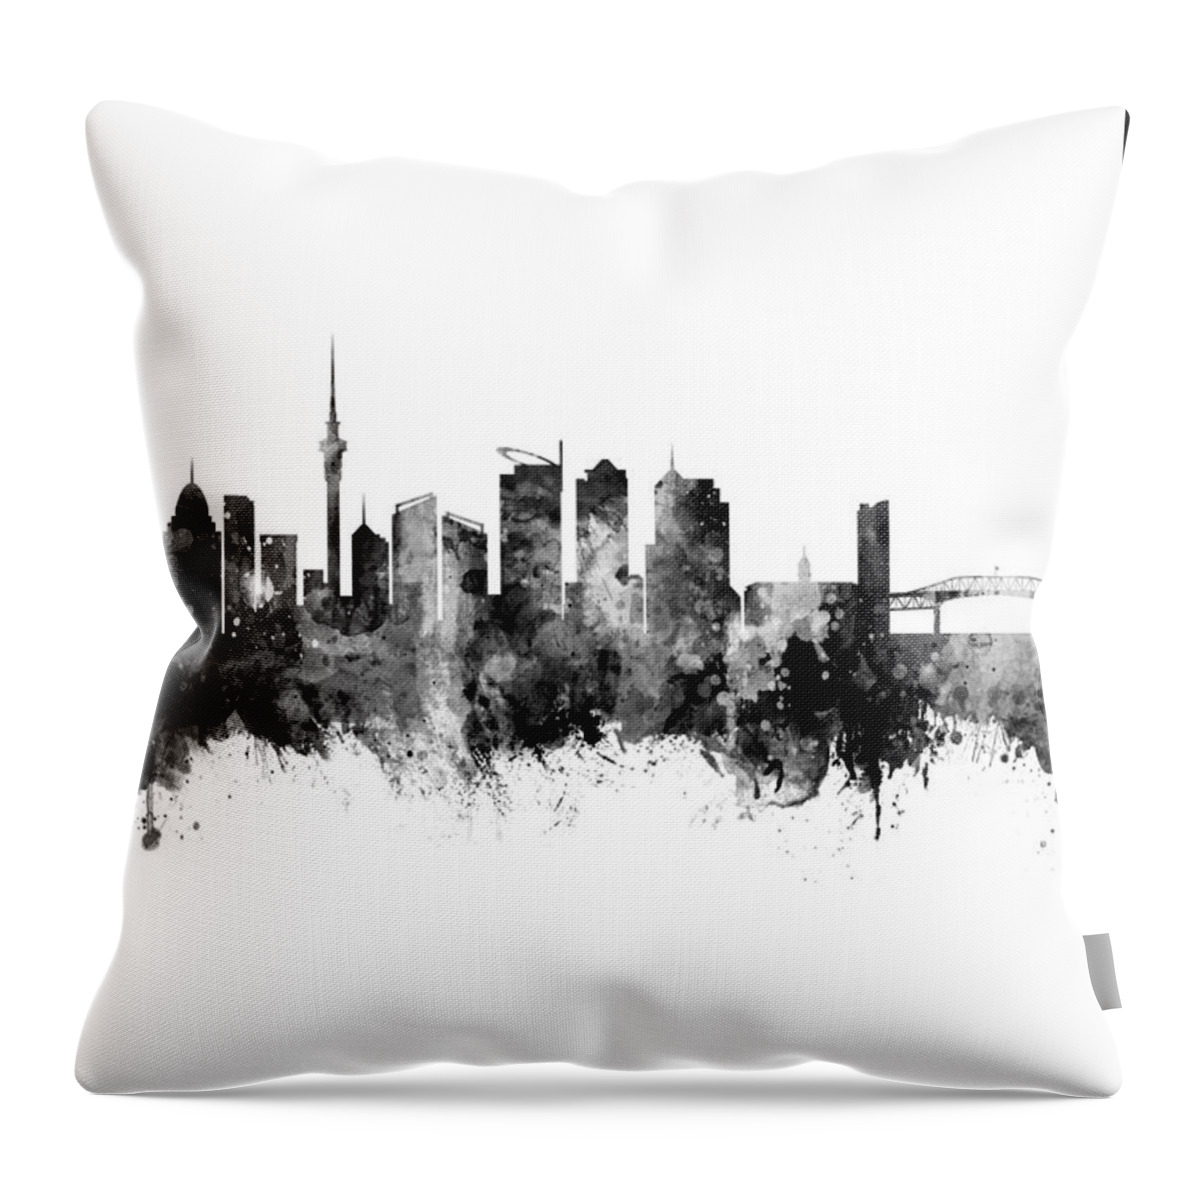 Auckland Throw Pillow featuring the digital art Auckland New Zealand Skyline #28 by Michael Tompsett